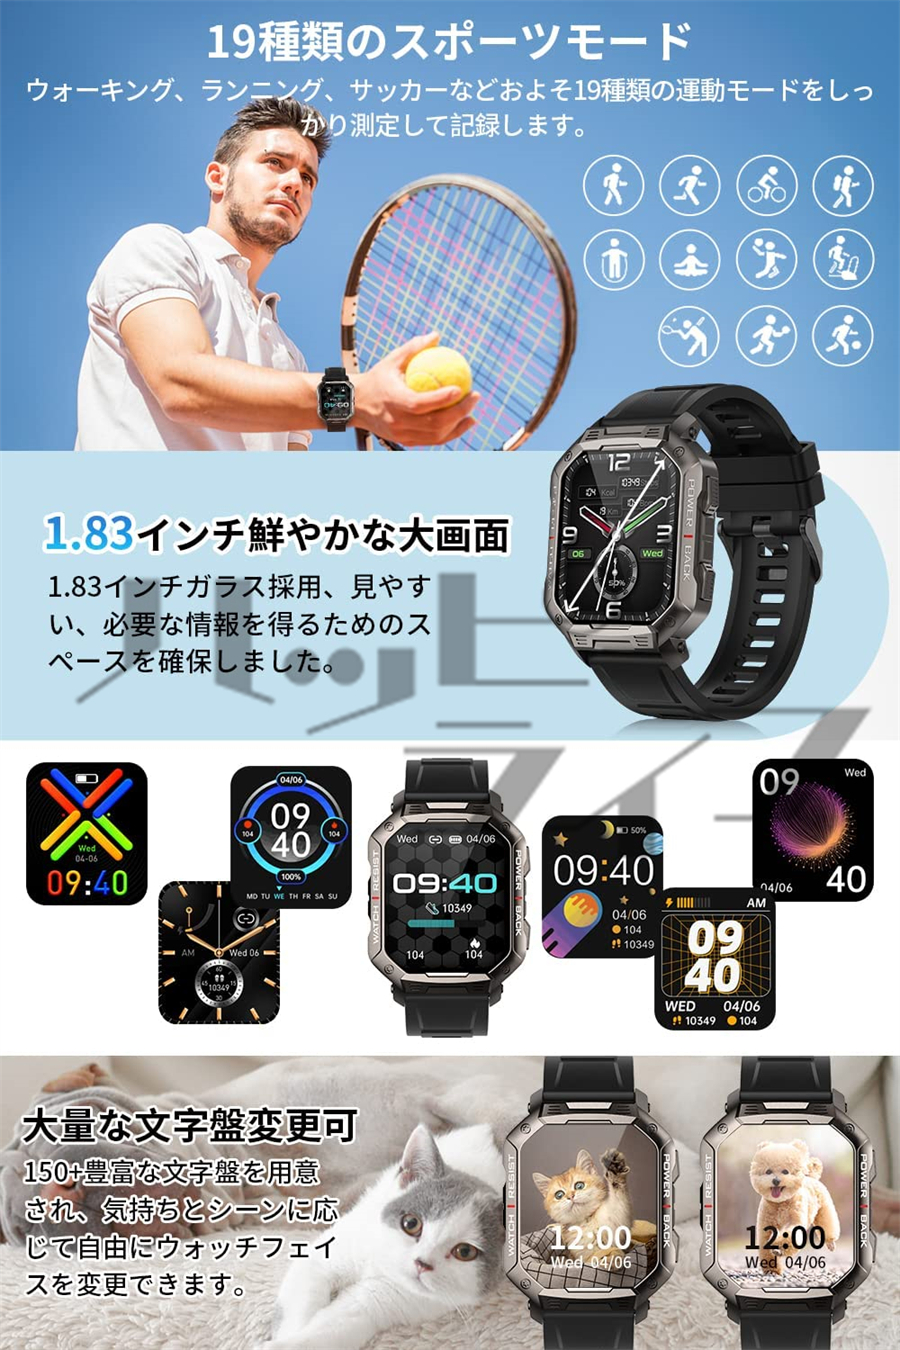 宅配便配送 スマートウォッチ 通話機能 日本製 センサー AI音声アシスタント 着信通知 活動量計 歩数計 多運動モード IP67防水 腕時計 iPhone  Android対応